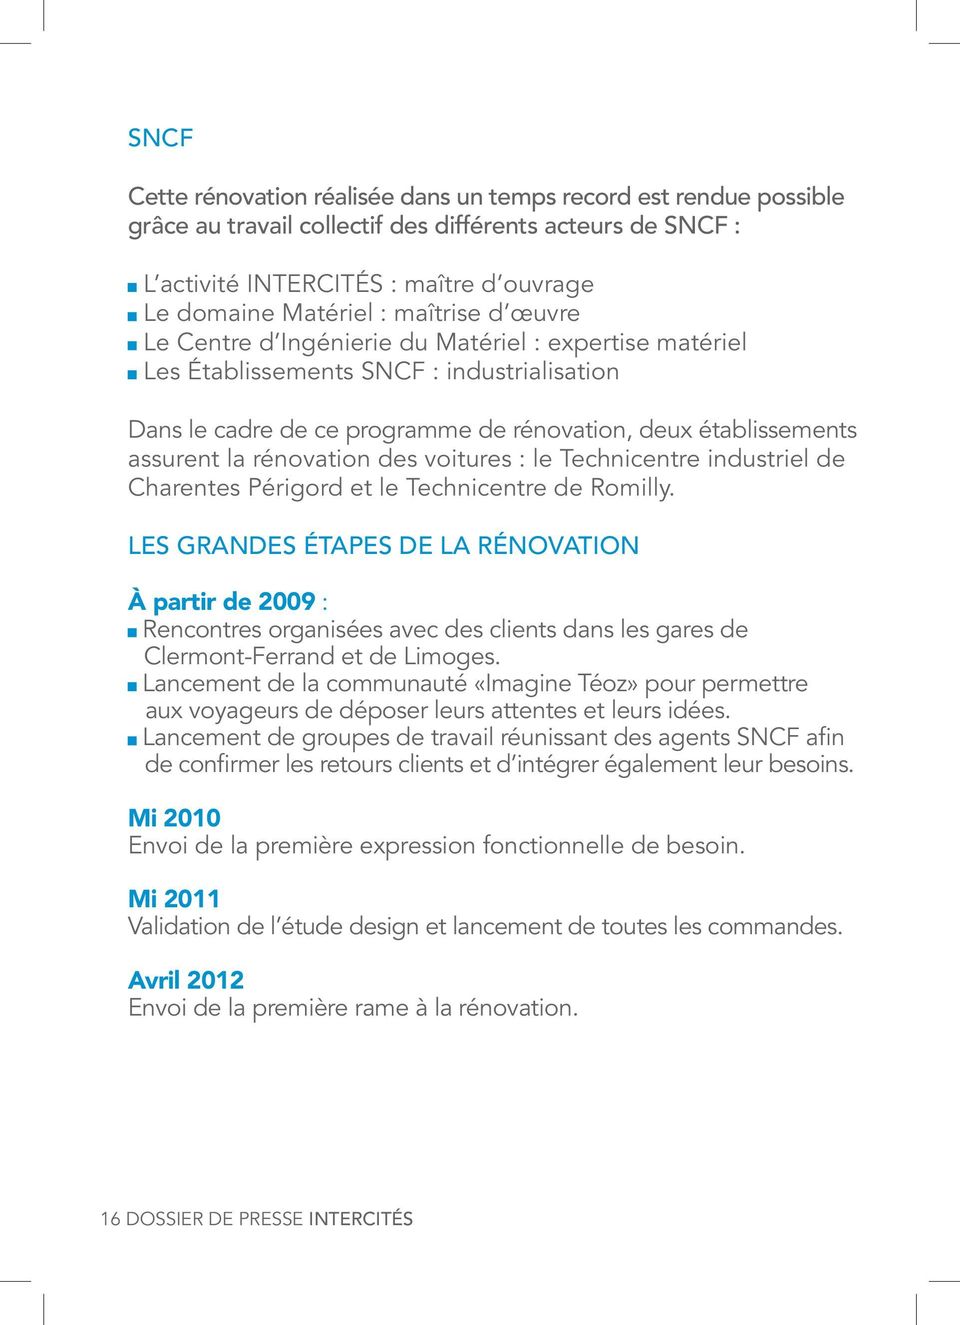 rénovation des voitures : le Technicentre industriel de Charentes Périgord et le Technicentre de Romilly.